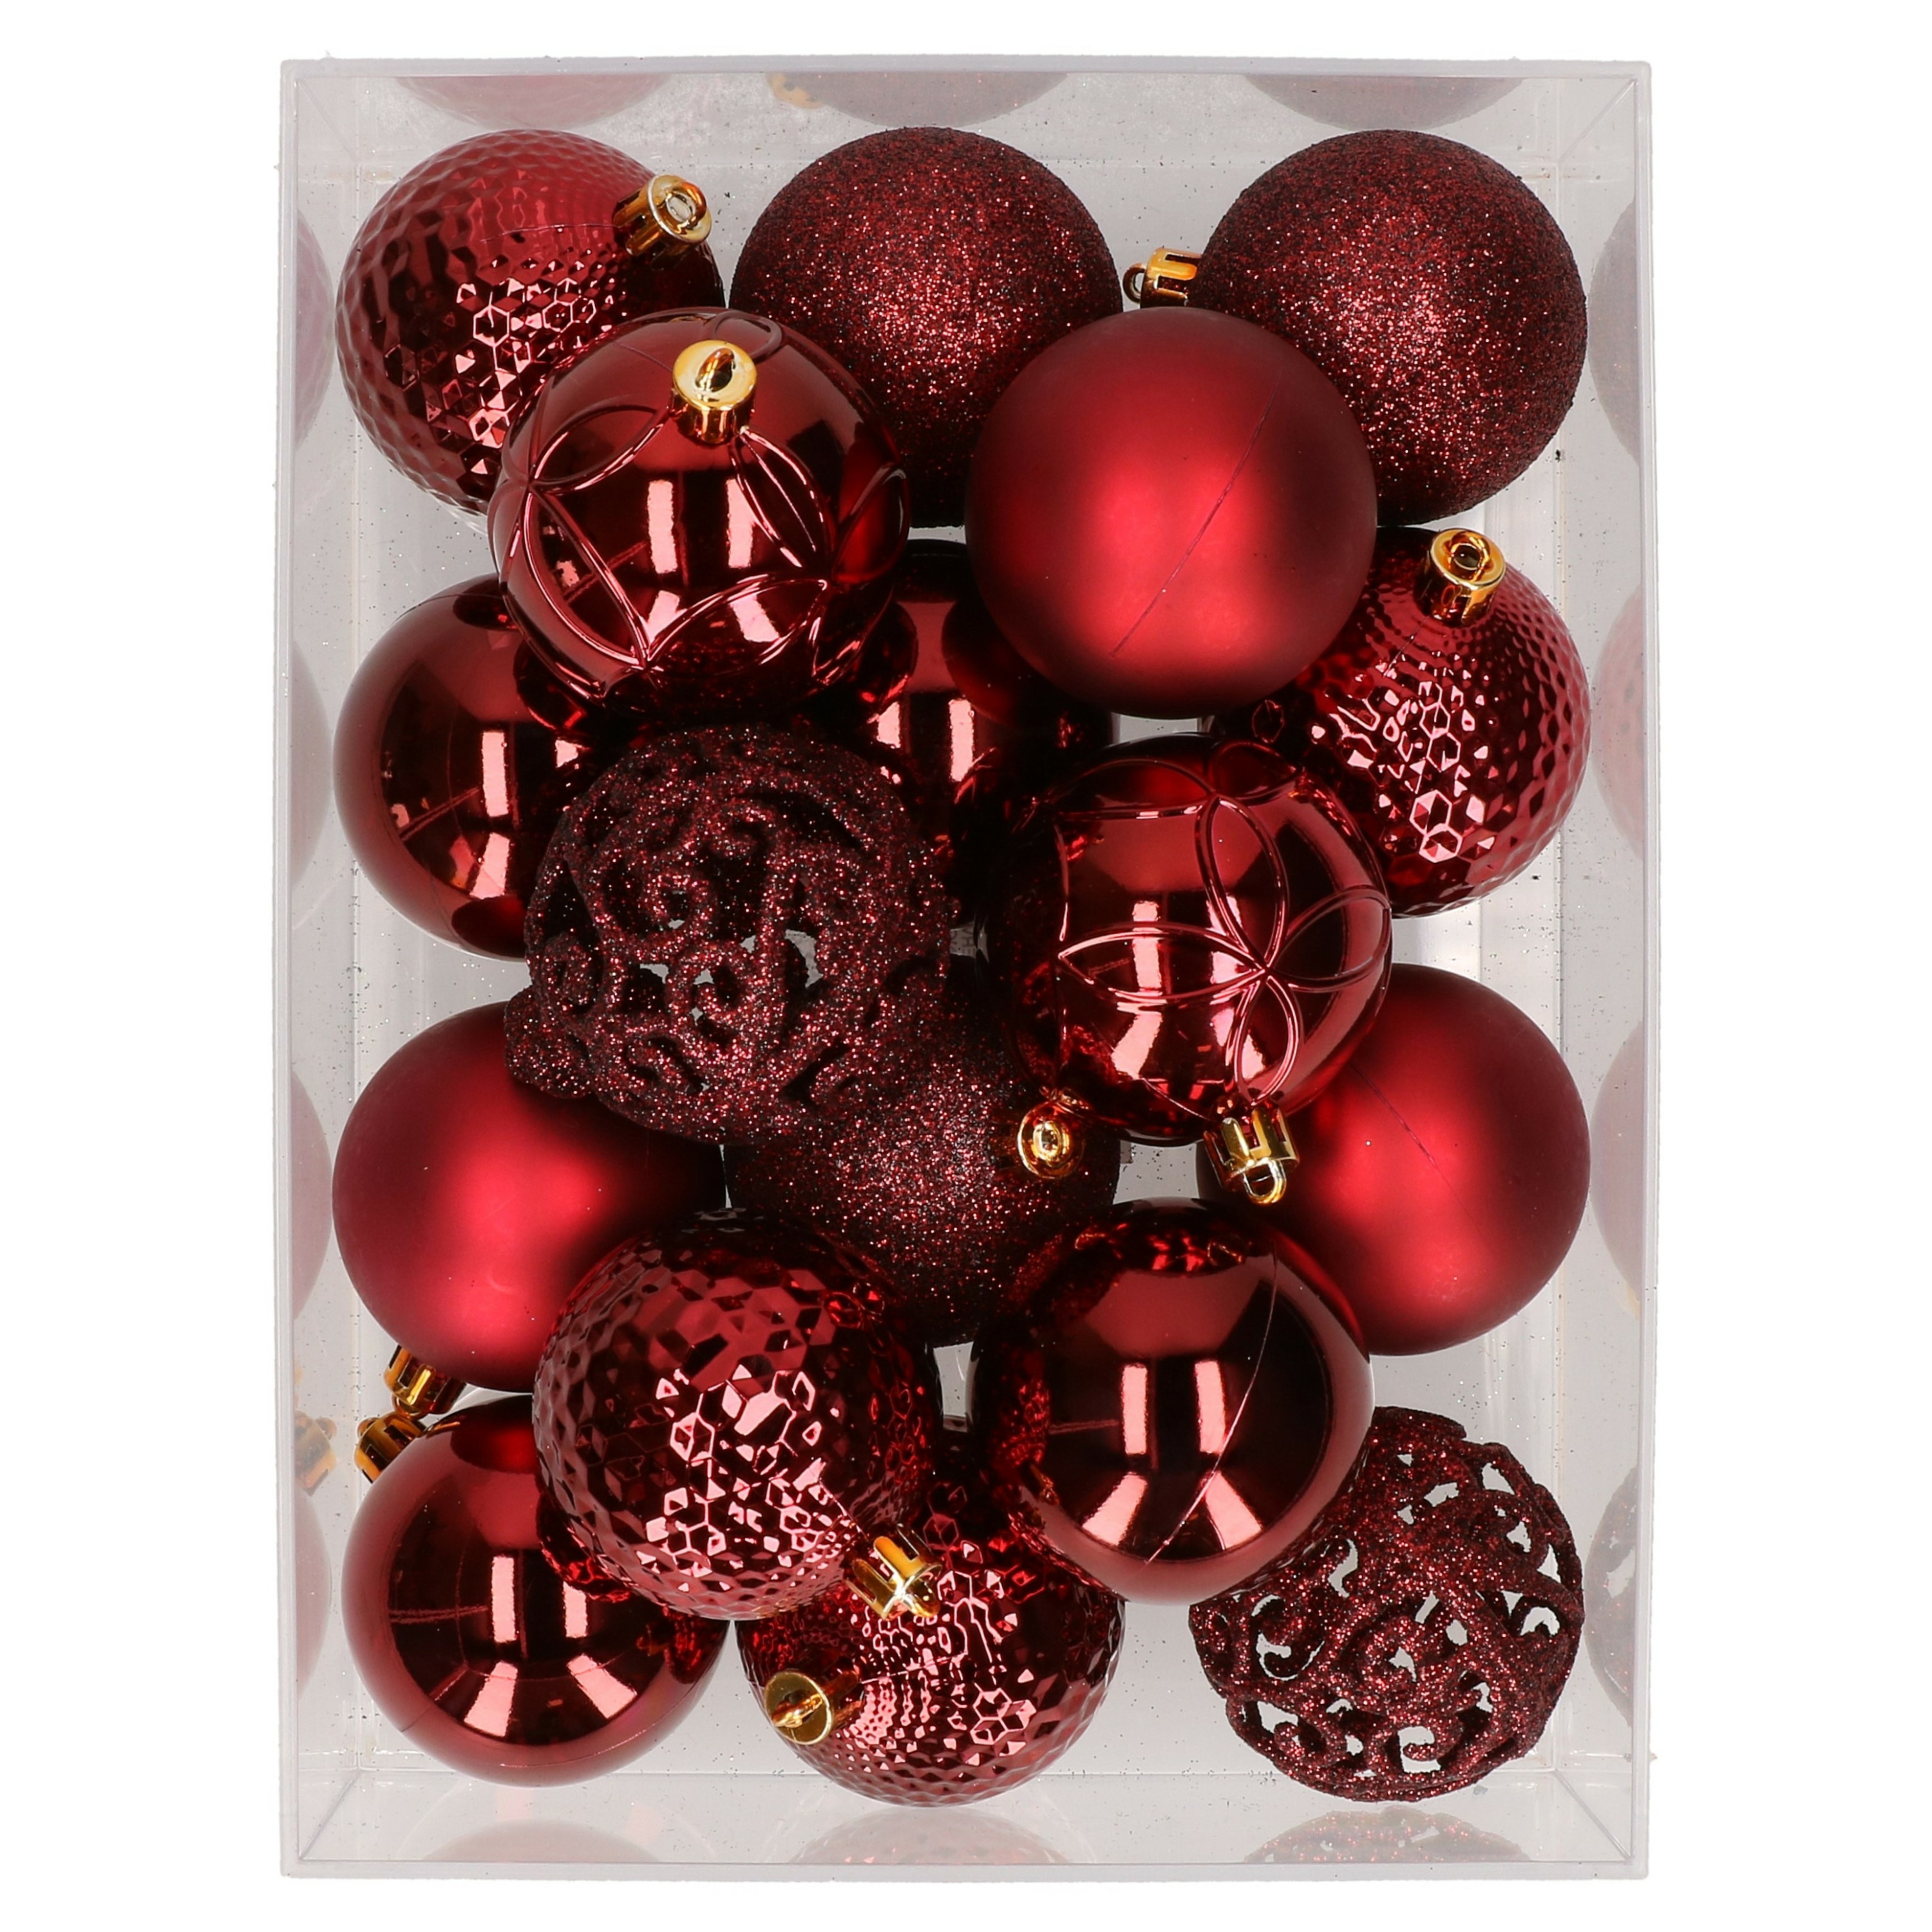 37x stuks kunststof kerstballen bordeaux rood 6 cm glans-mat-glitter mix